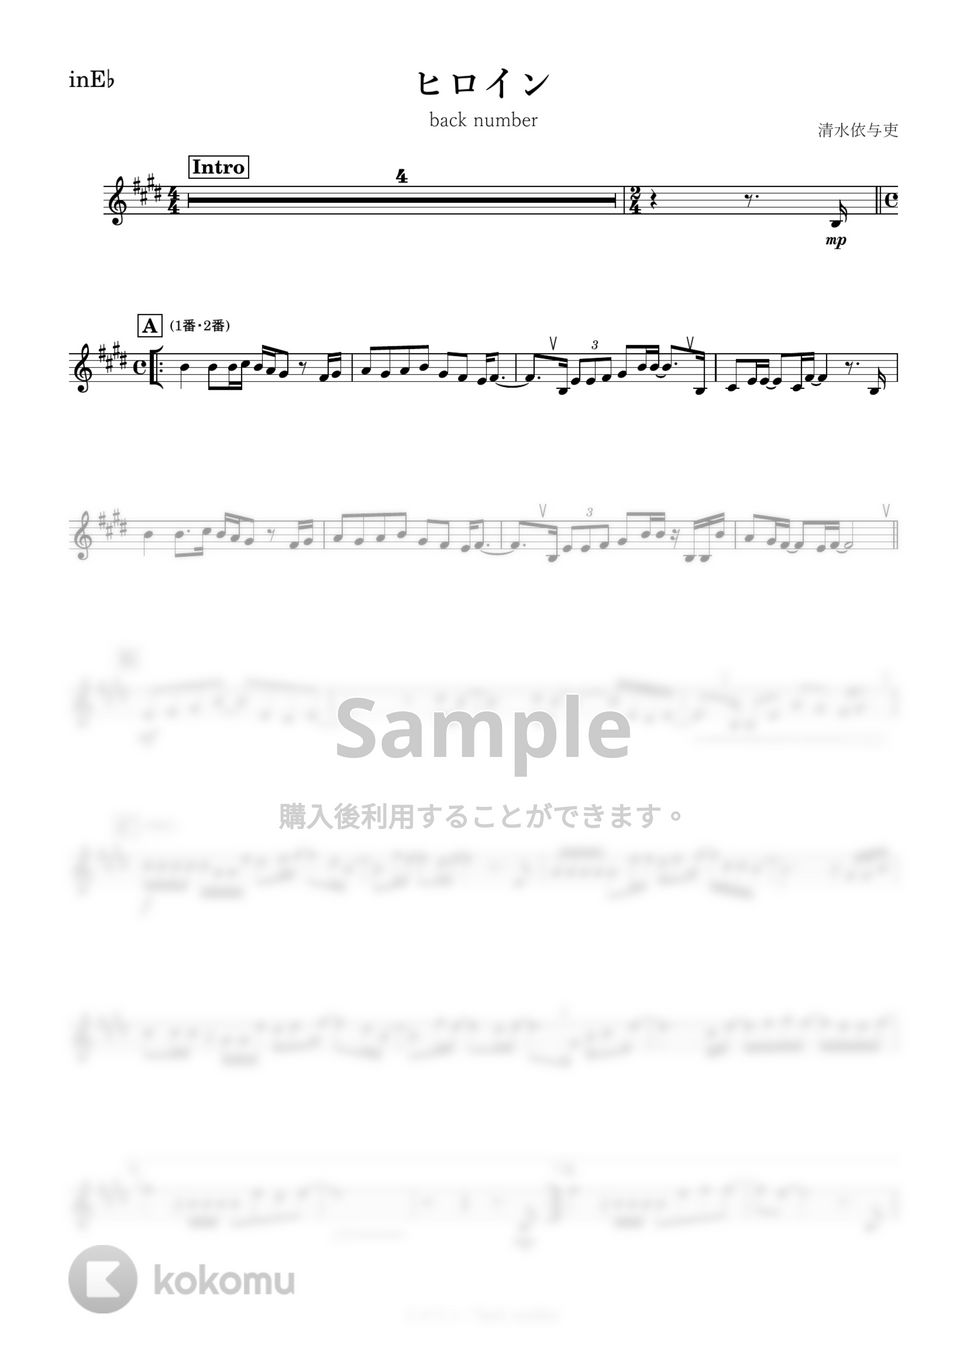 back number - ヒロイン (E♭) by kanamusic